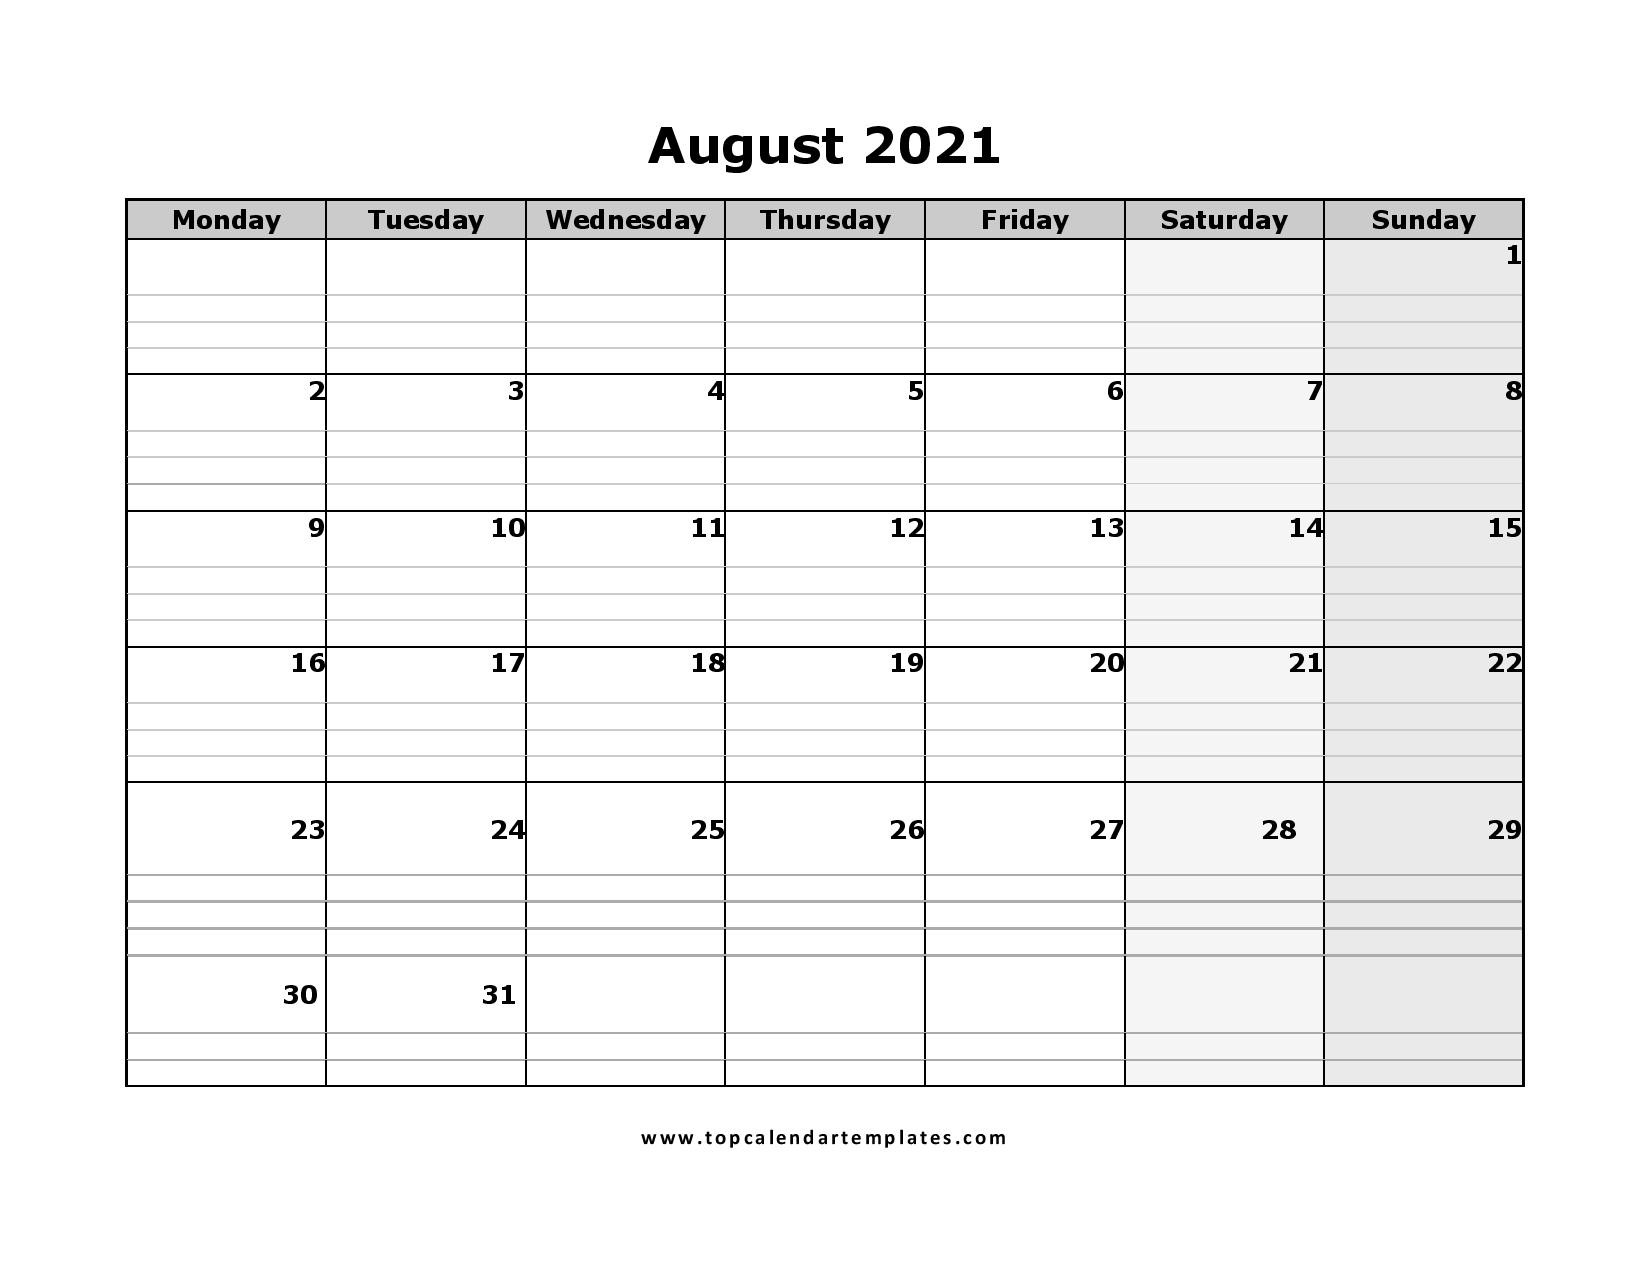 Free August 2021 Printable Calendar In Pdf Format-Due Date Of August 01 2021 Weekly Calendar